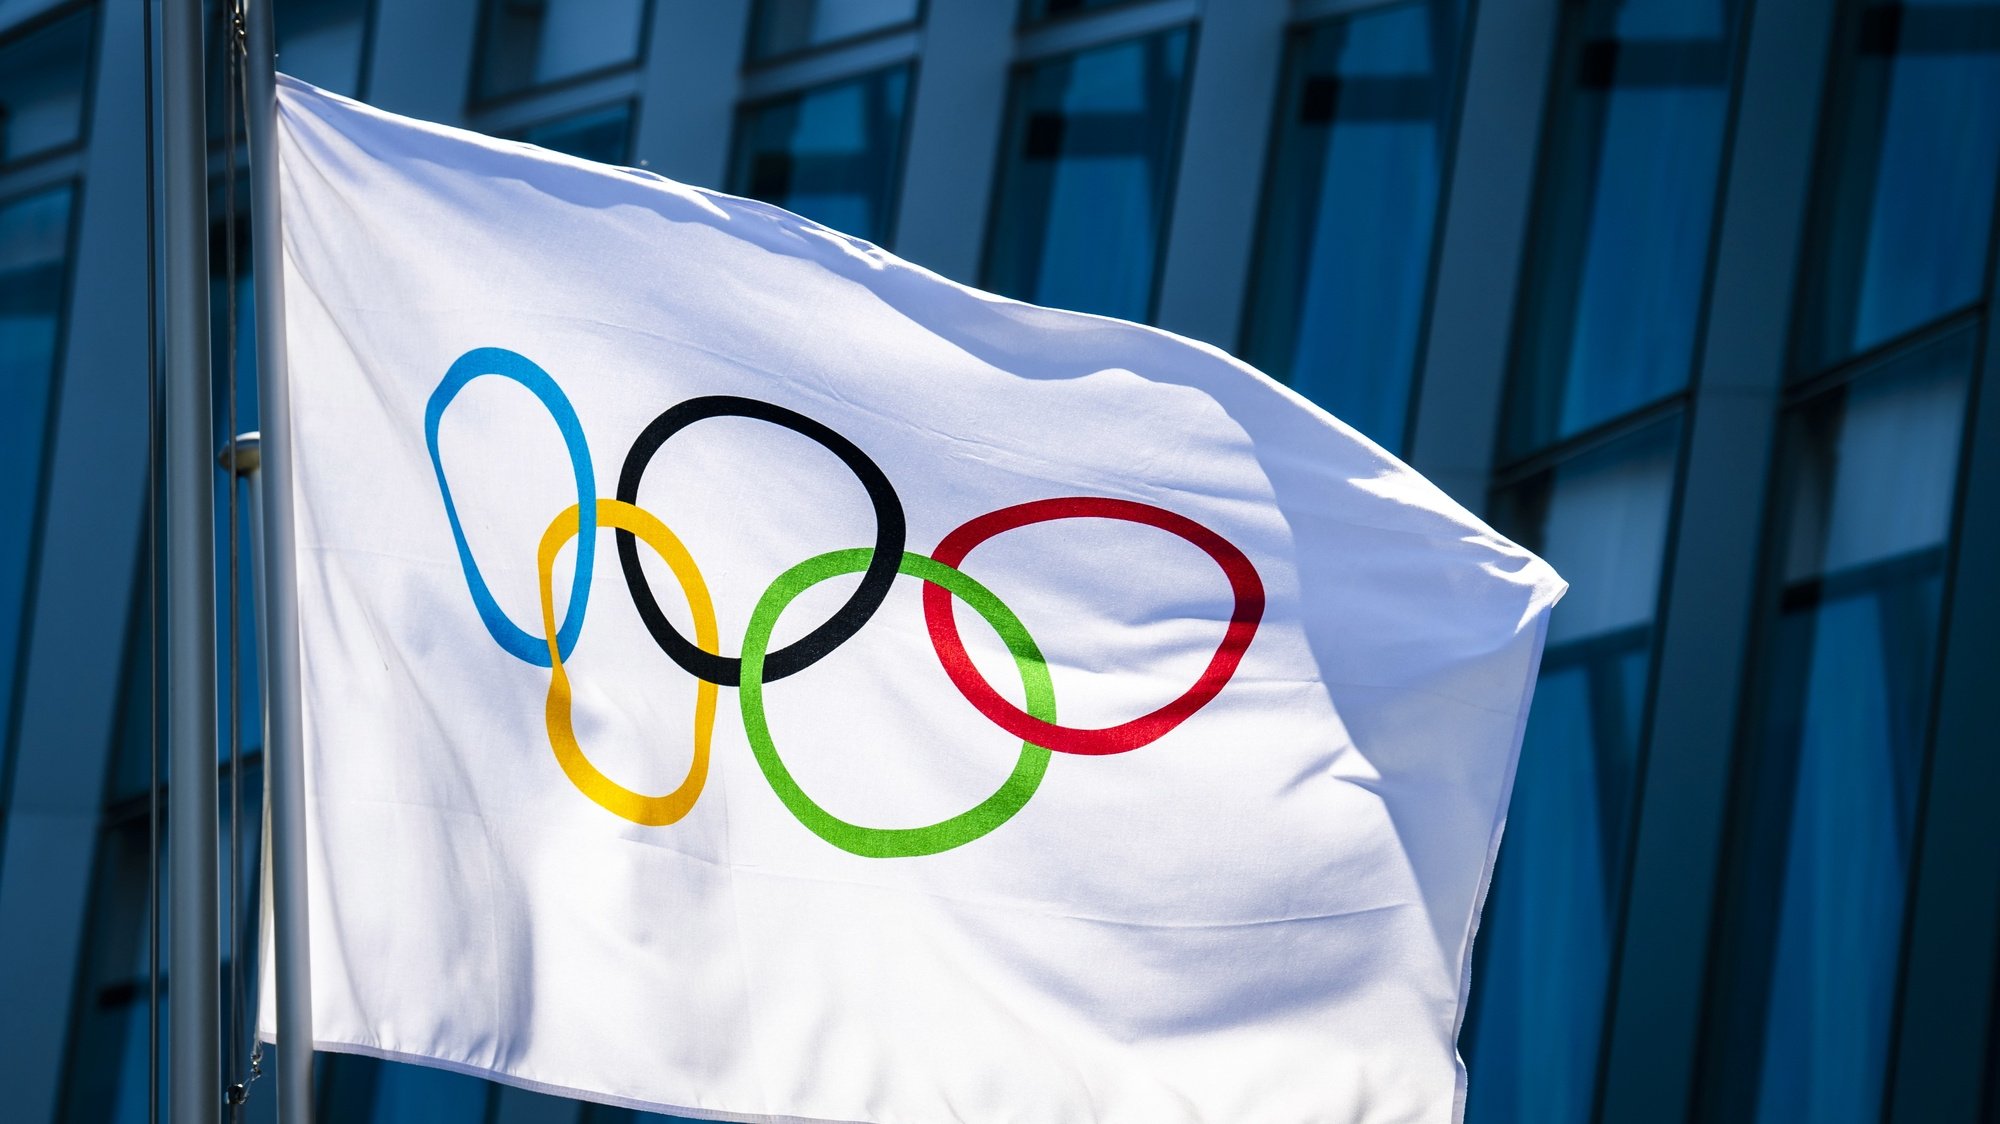 Bandeira dos Jogos Olímpicos